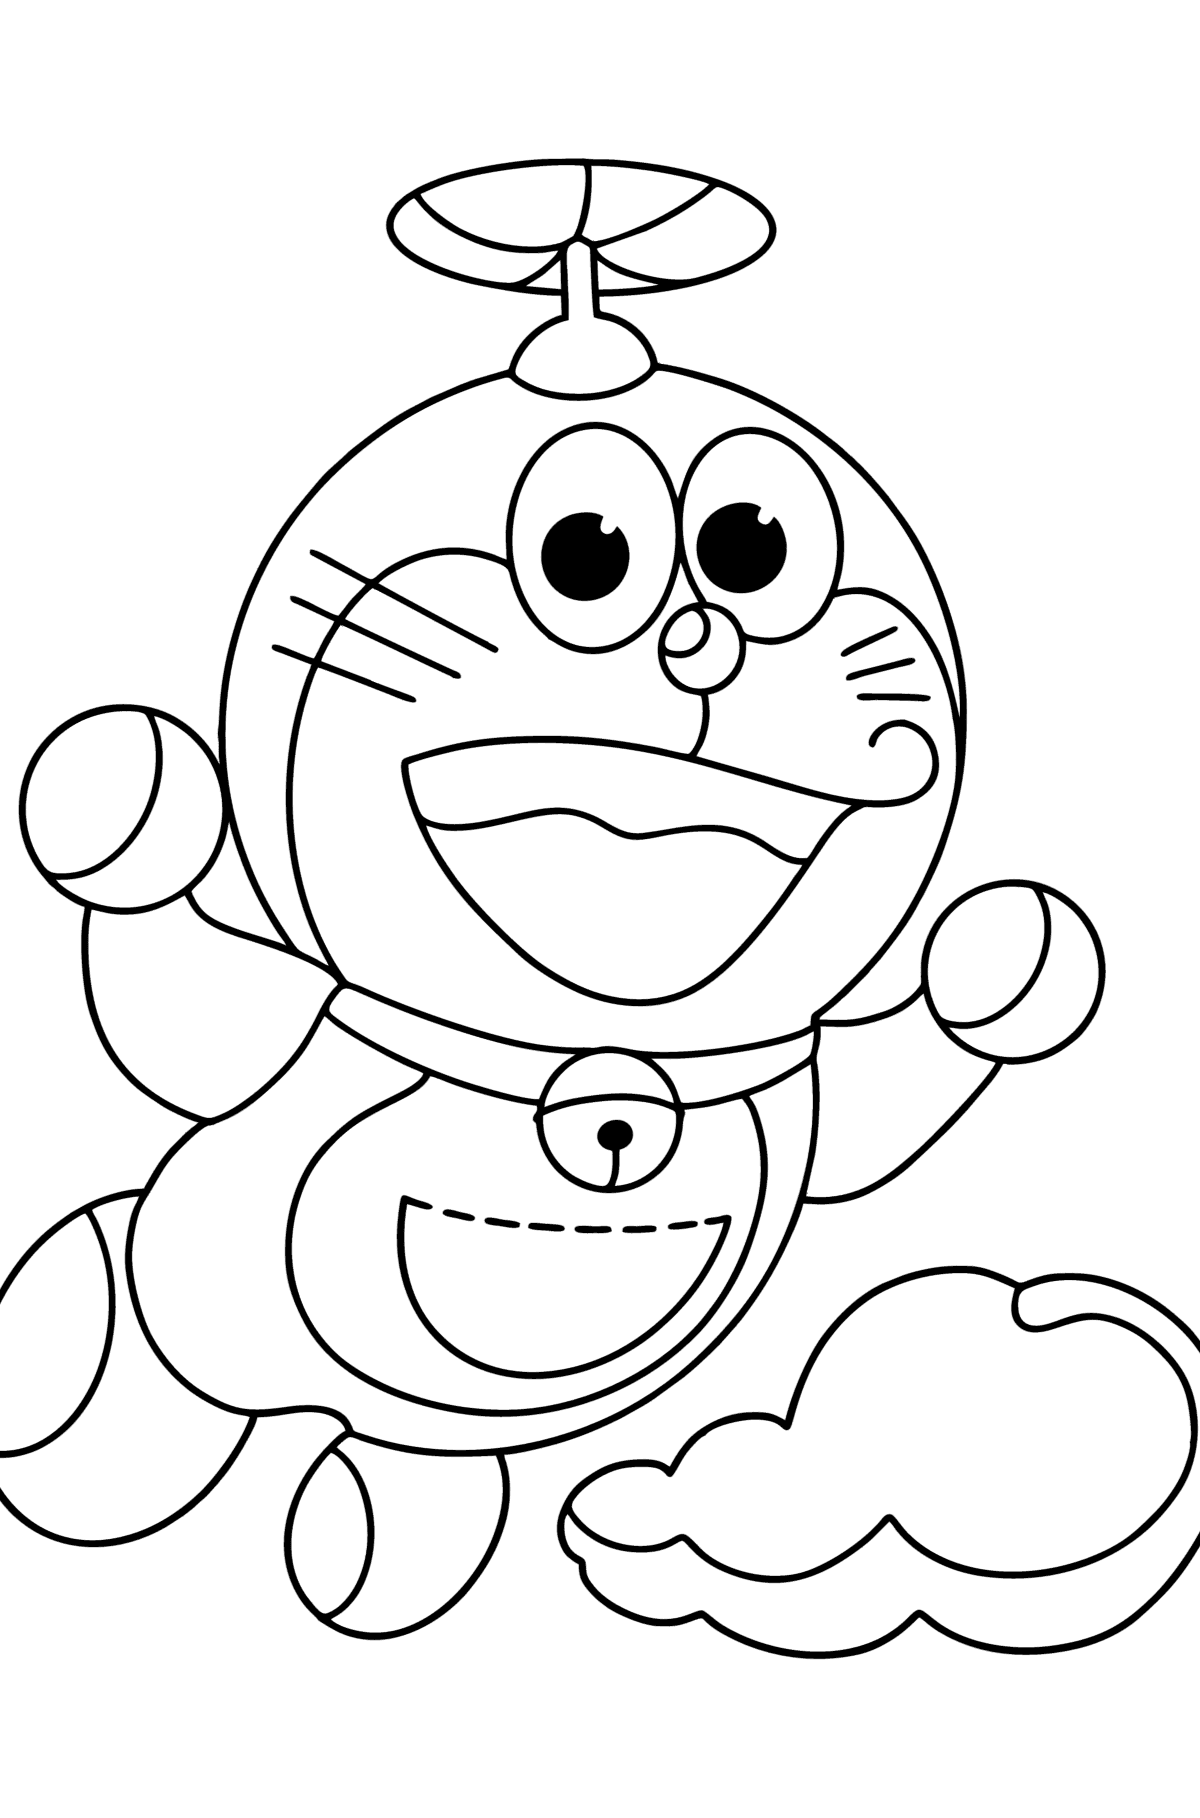 Tegning til fargelegging Doraemon Helikopter - Tegninger til fargelegging for barn